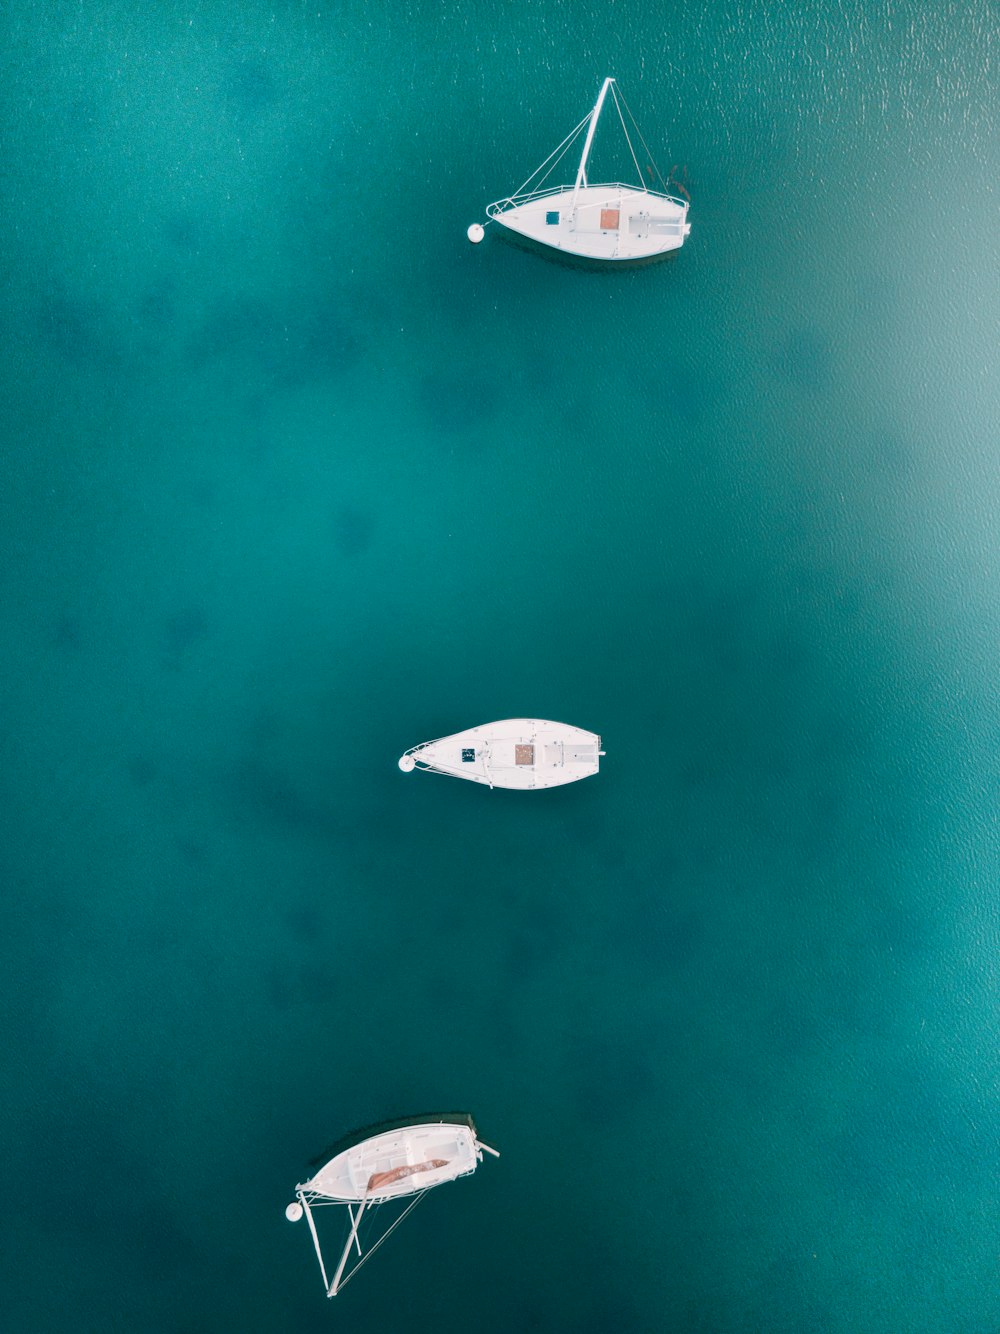 Fotografia dell'uccello di tre barche bianche